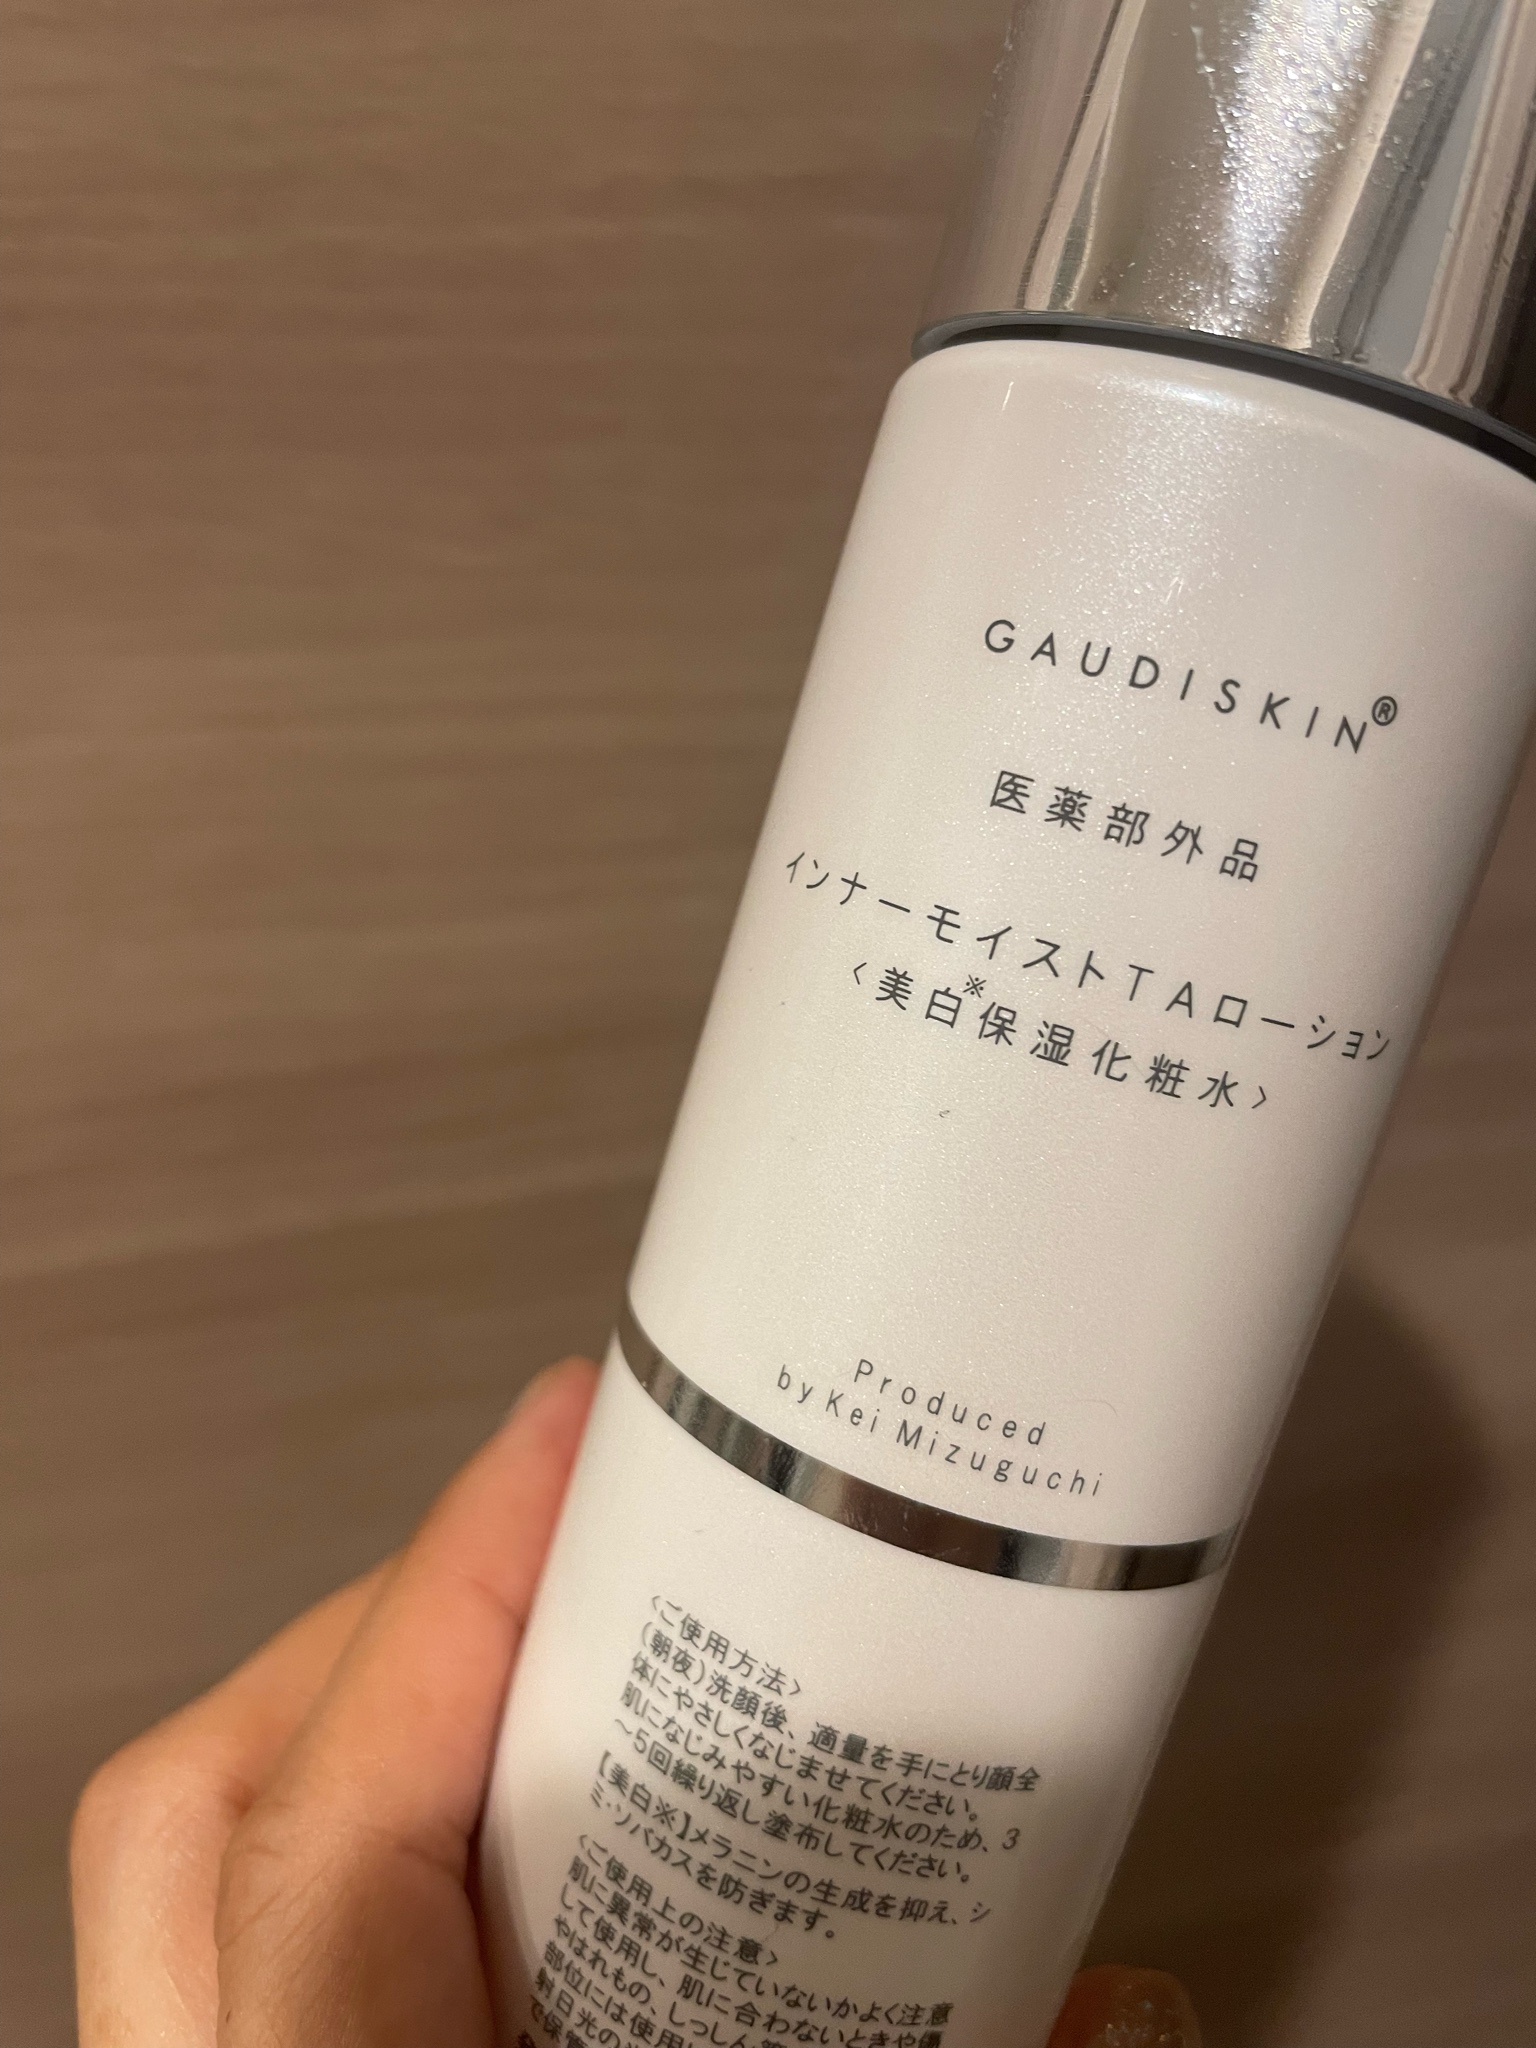 GAUDISKIN / インナーモイストTAローションの商品情報｜美容・化粧品 